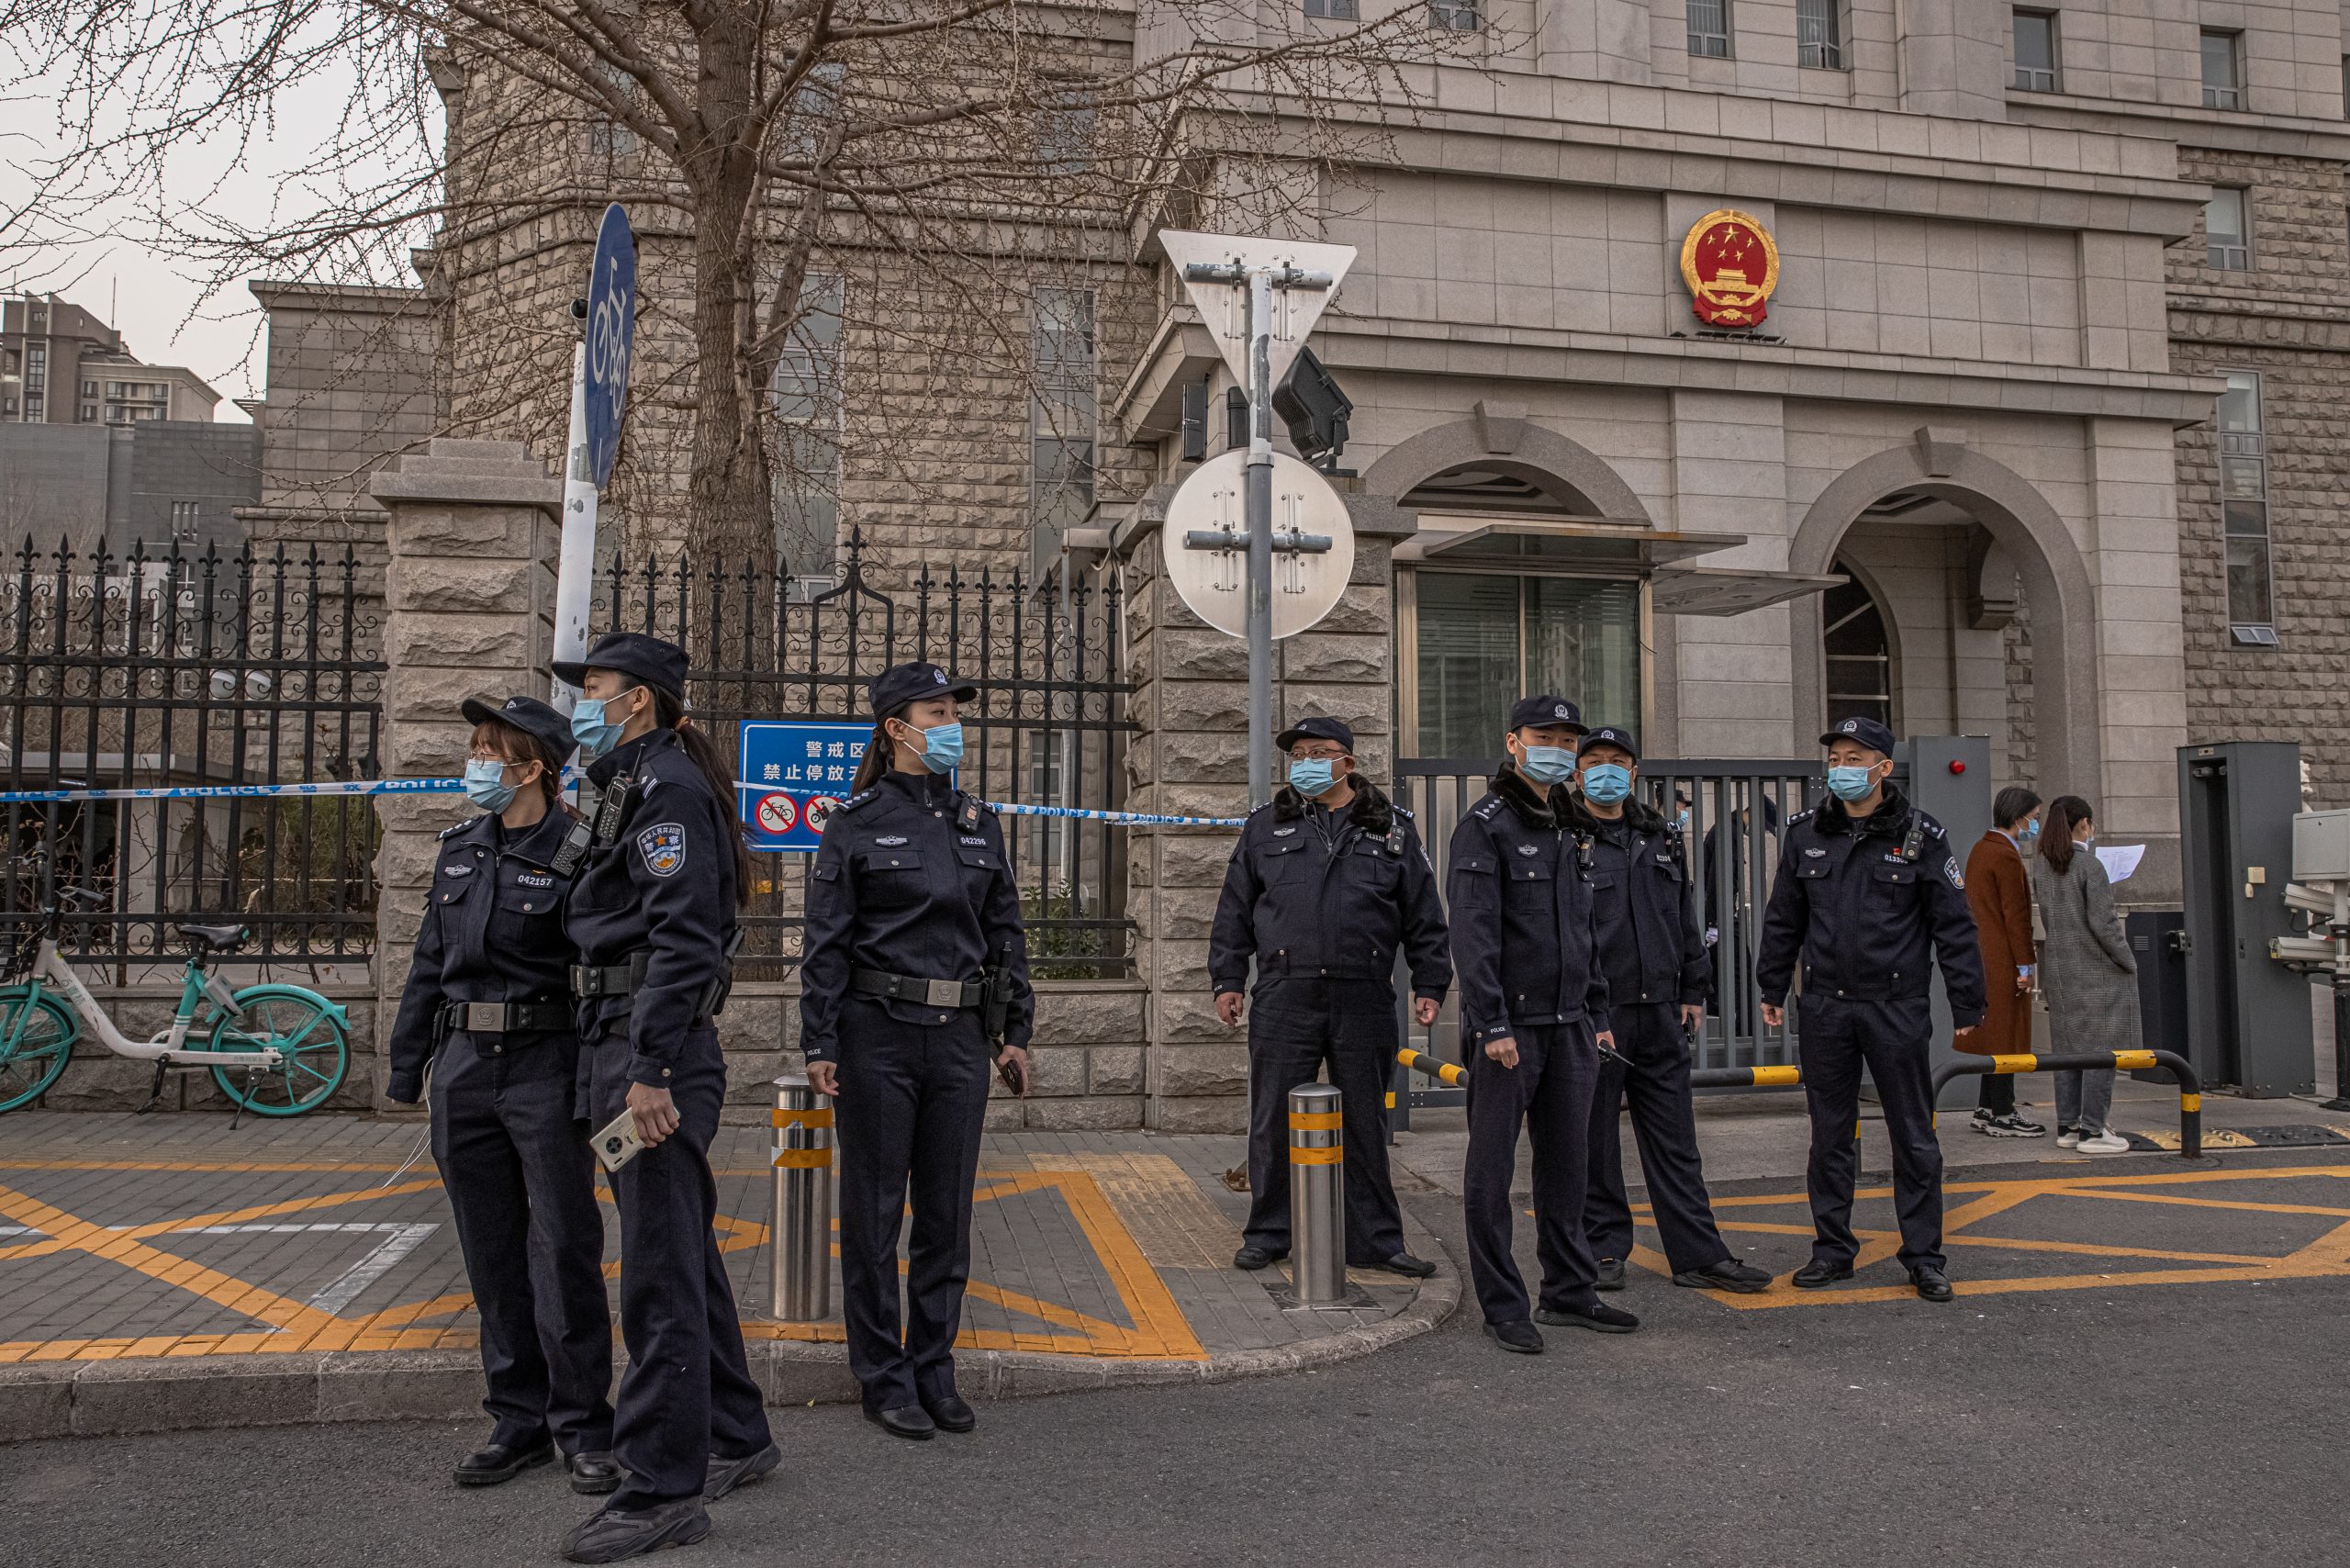 Kineska policija i novinari